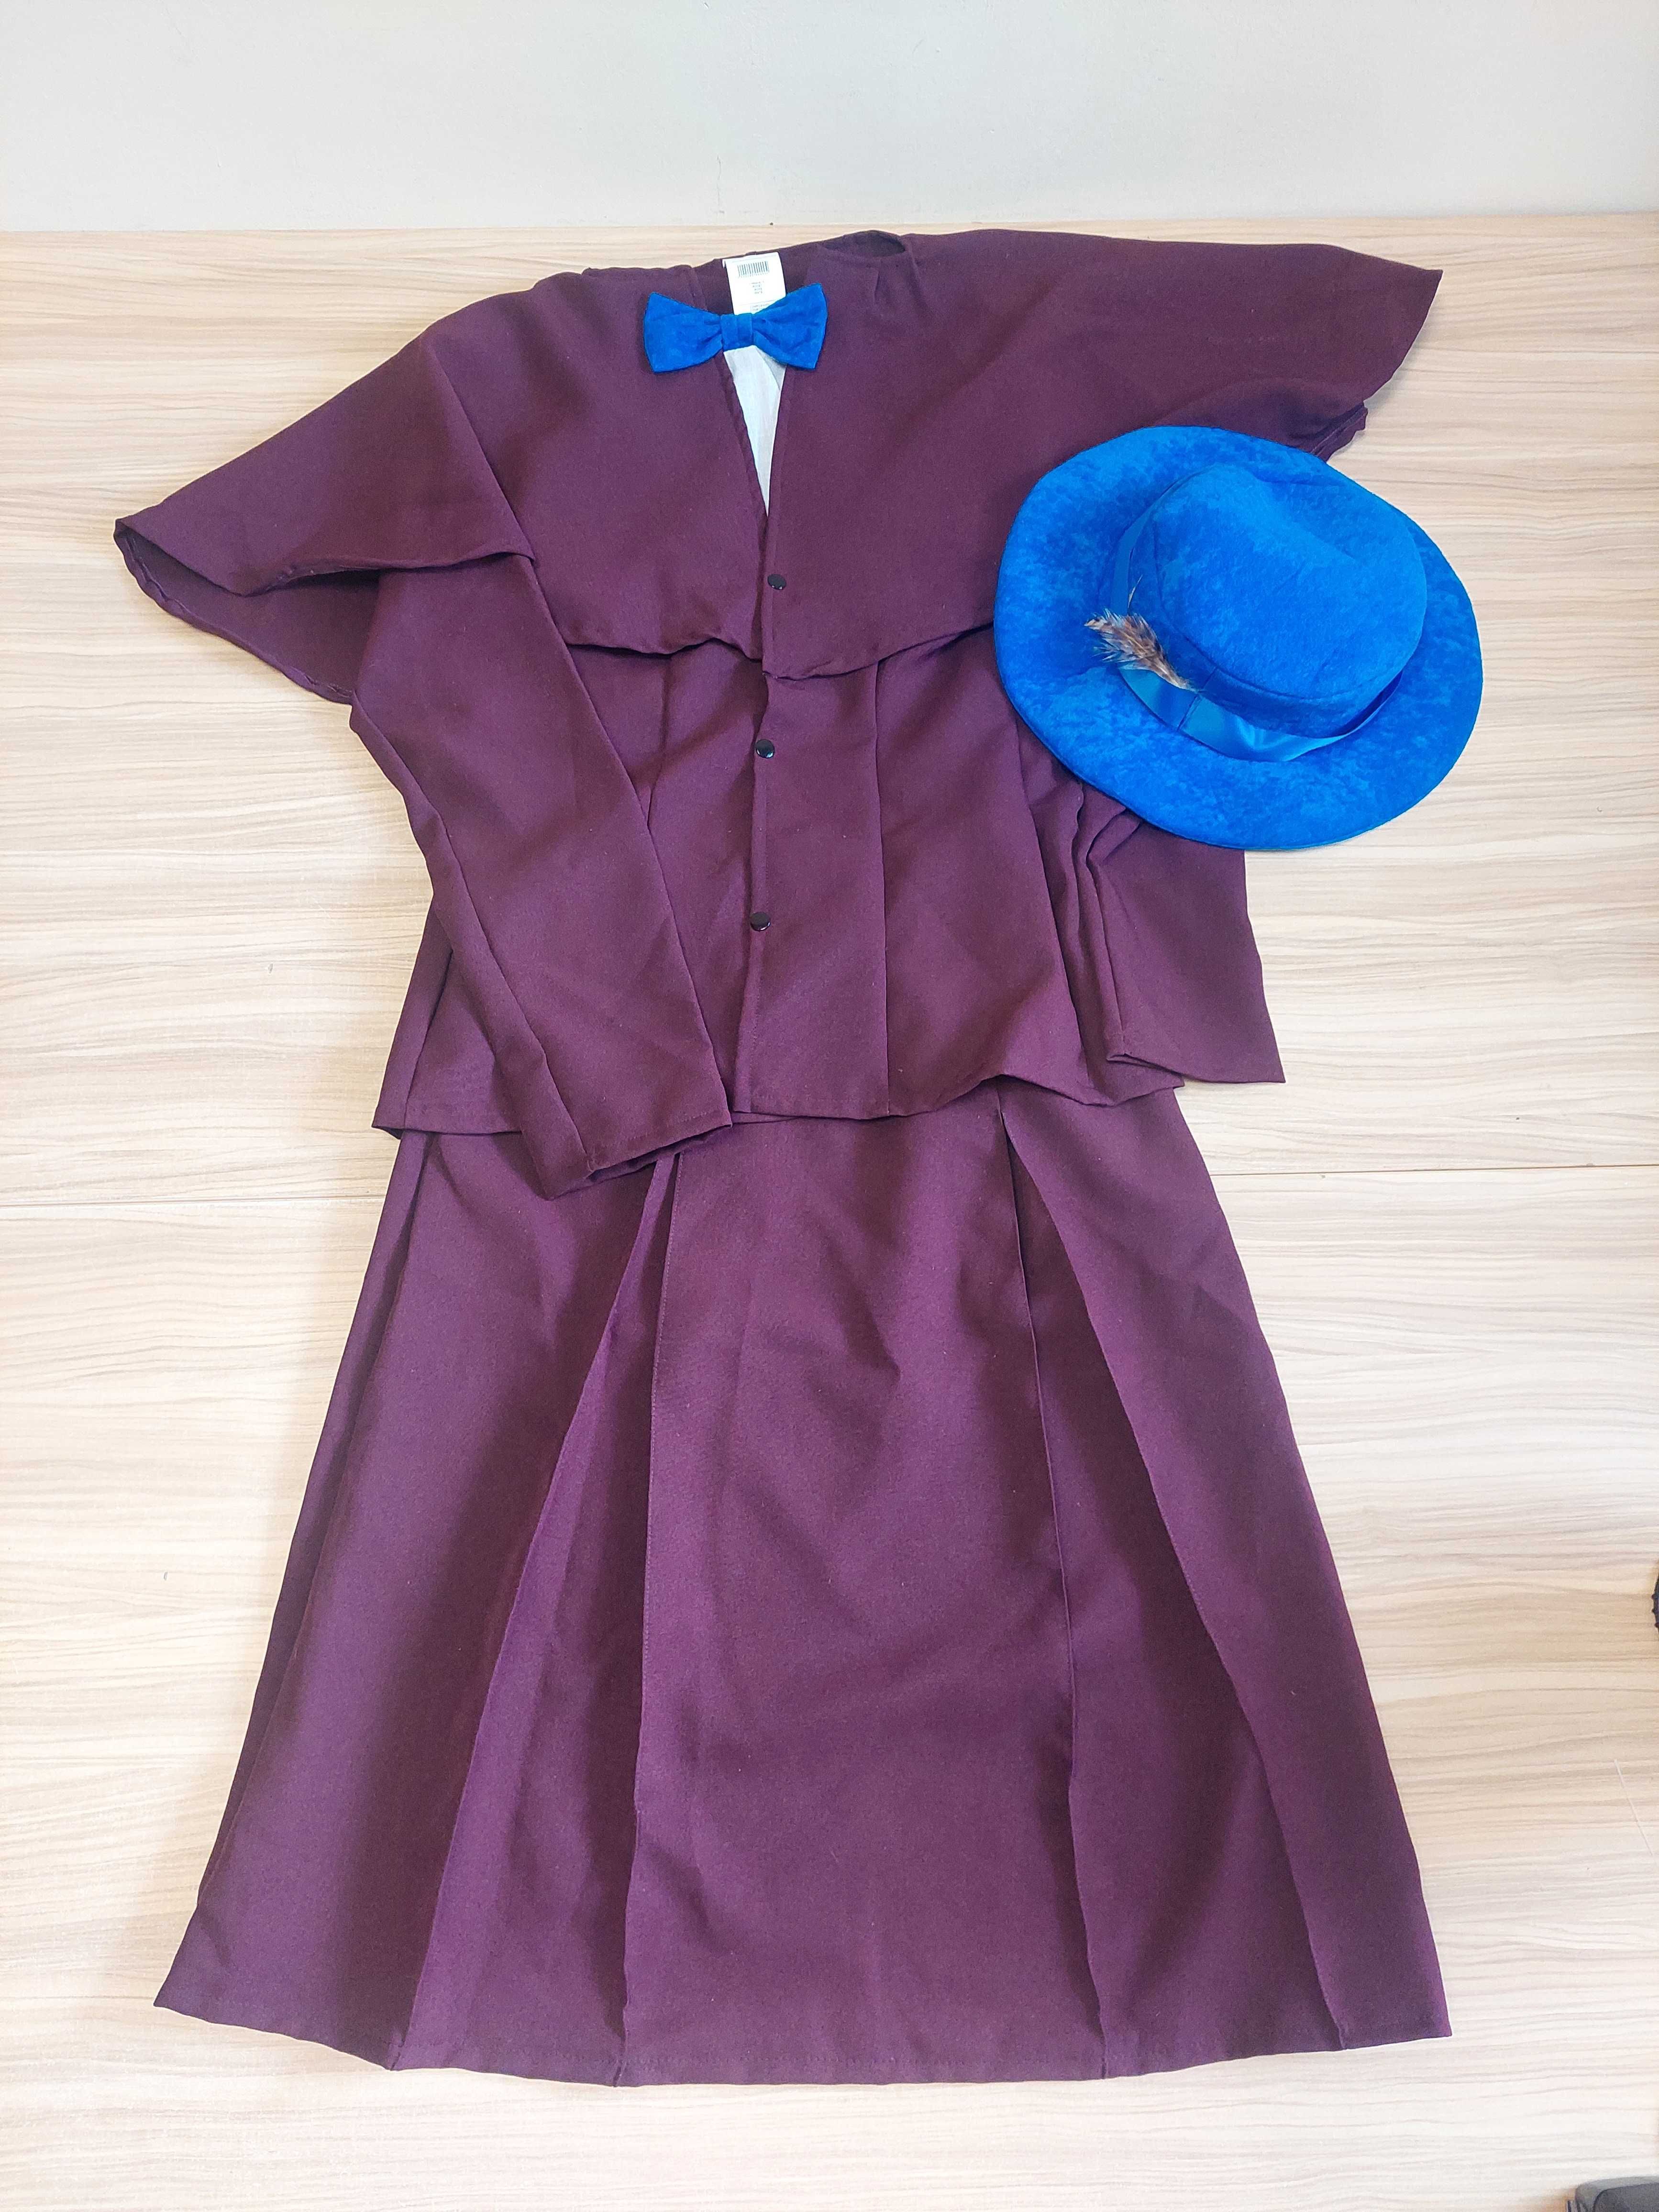 Mary Poppins kostium strój przebranie rozmiar S